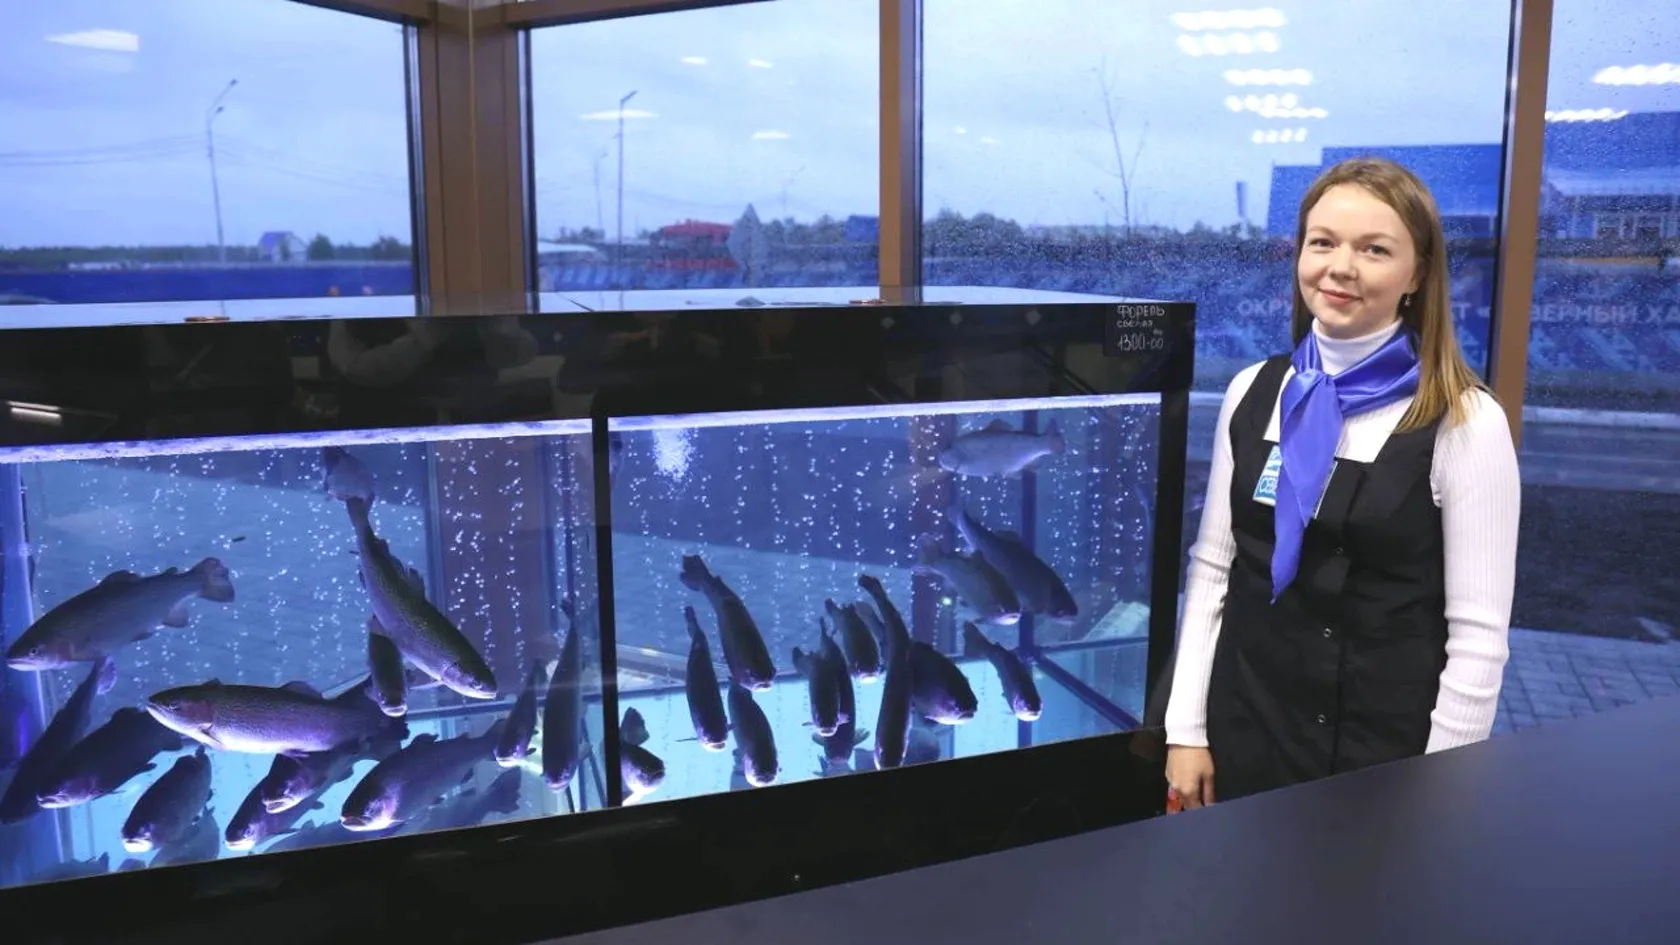 Витрина из аквариумов показывает товар "лицом" - форель покупатели выбирают самостоятельно. Фото: предоставлено пресс-службой губернатора ЯНАО.